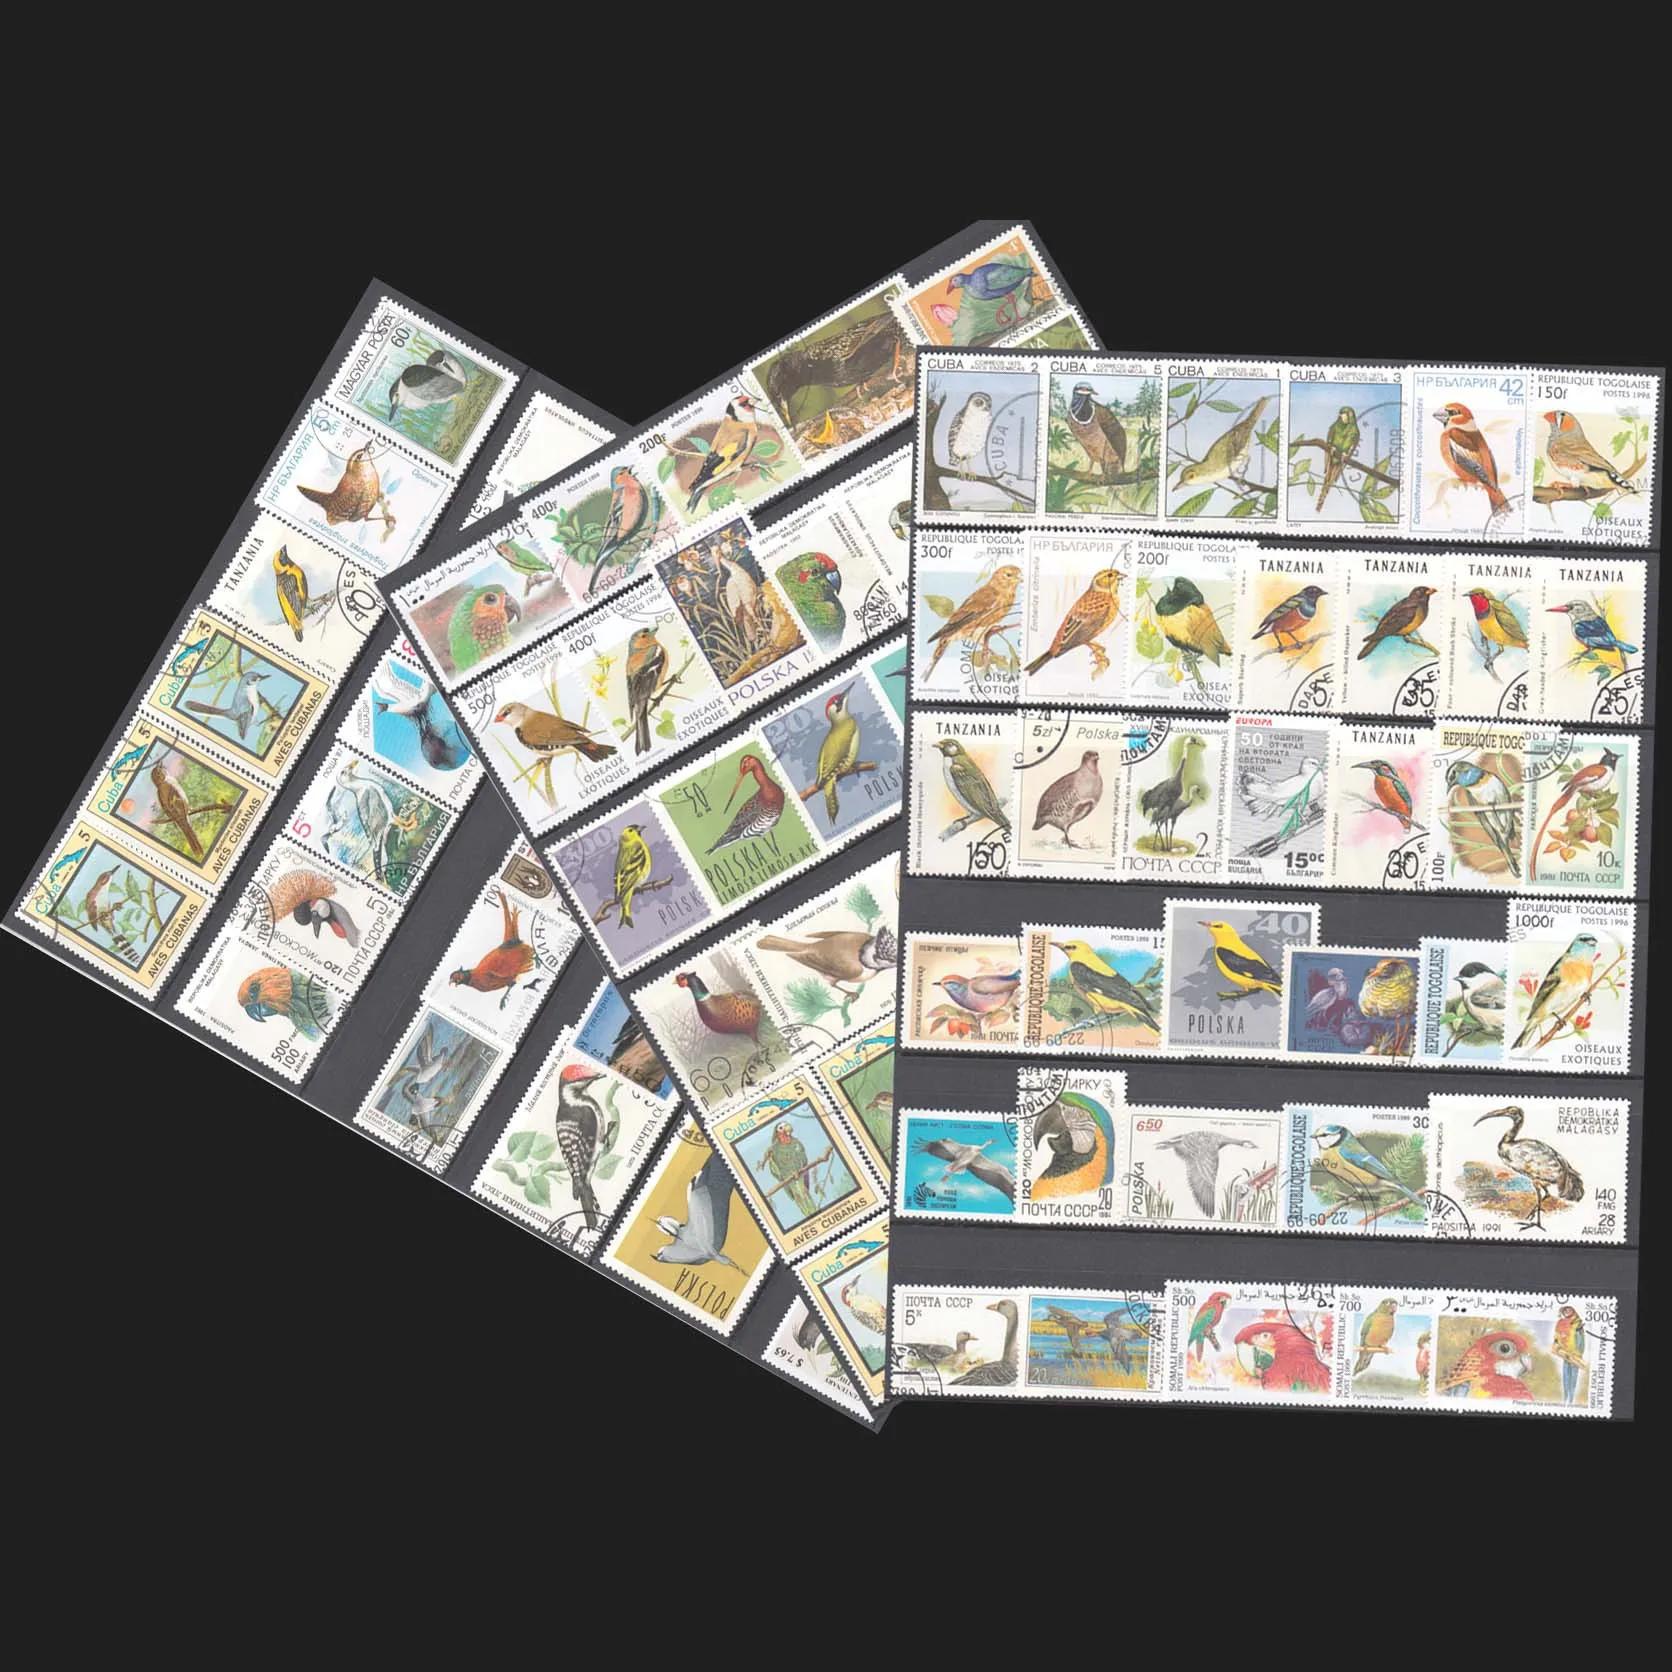 250 개/몫, 주제 새, 단어의 다른 새 우표, 동물 우표, 포스트마크와 함께 사용, 고품질, 우표 컬렉션